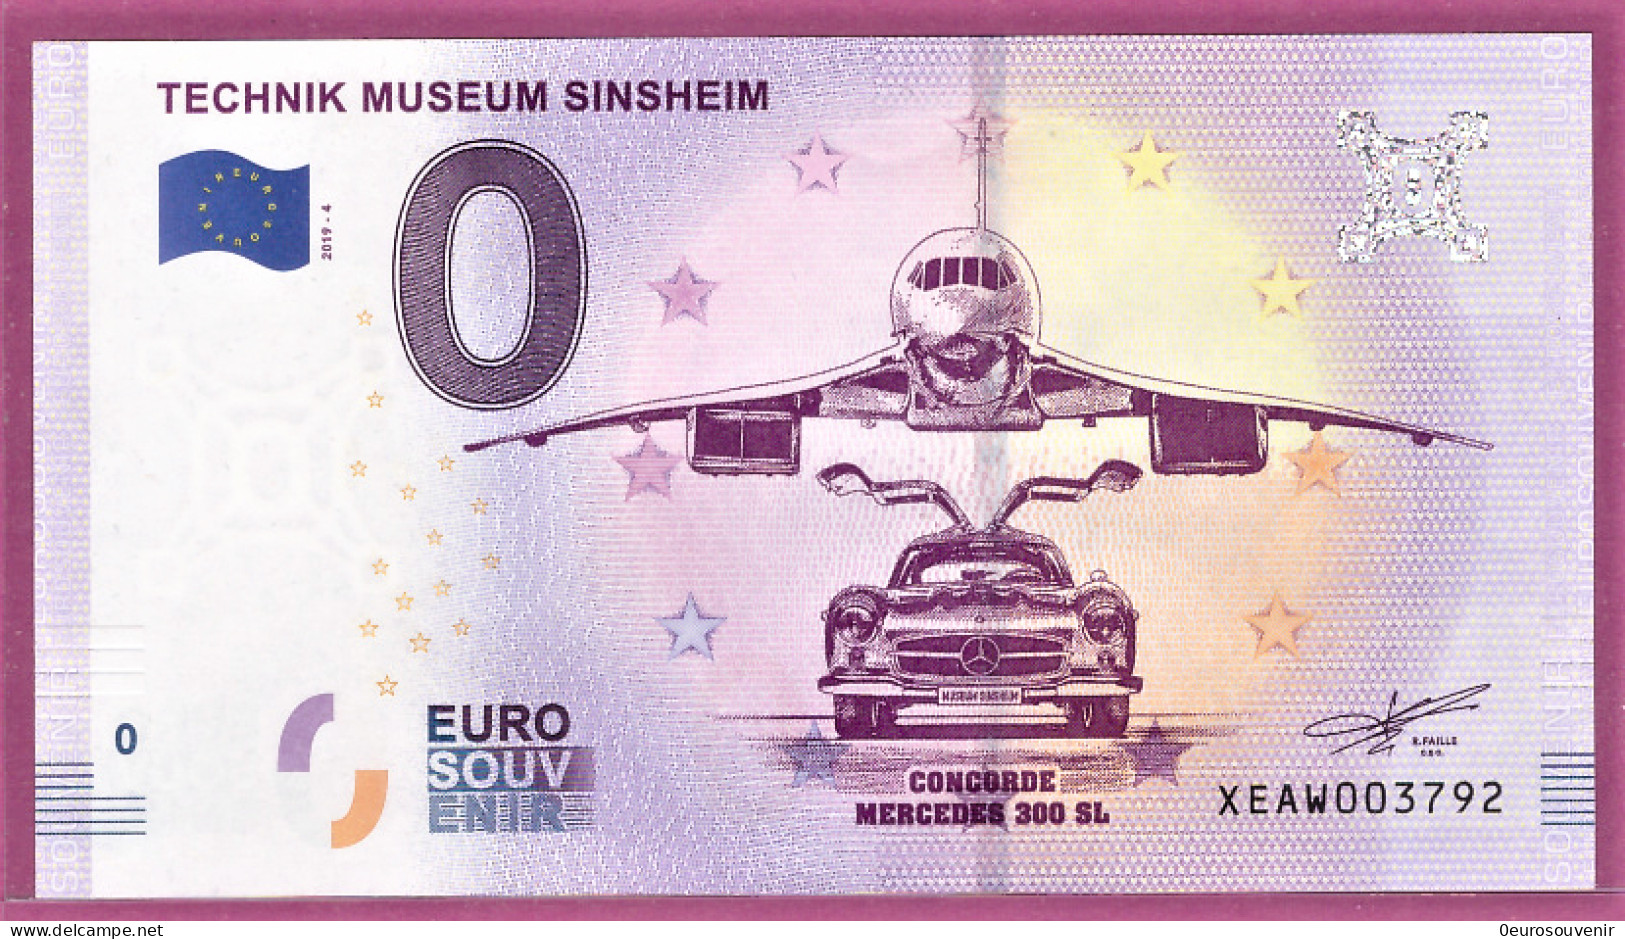 0-Euro XEAW 04 2019 TECHNIK MUSEUM SINSHEIM - CONCORDE + MERCEDES 300 SL FLÜGELTÜRER - Private Proofs / Unofficial